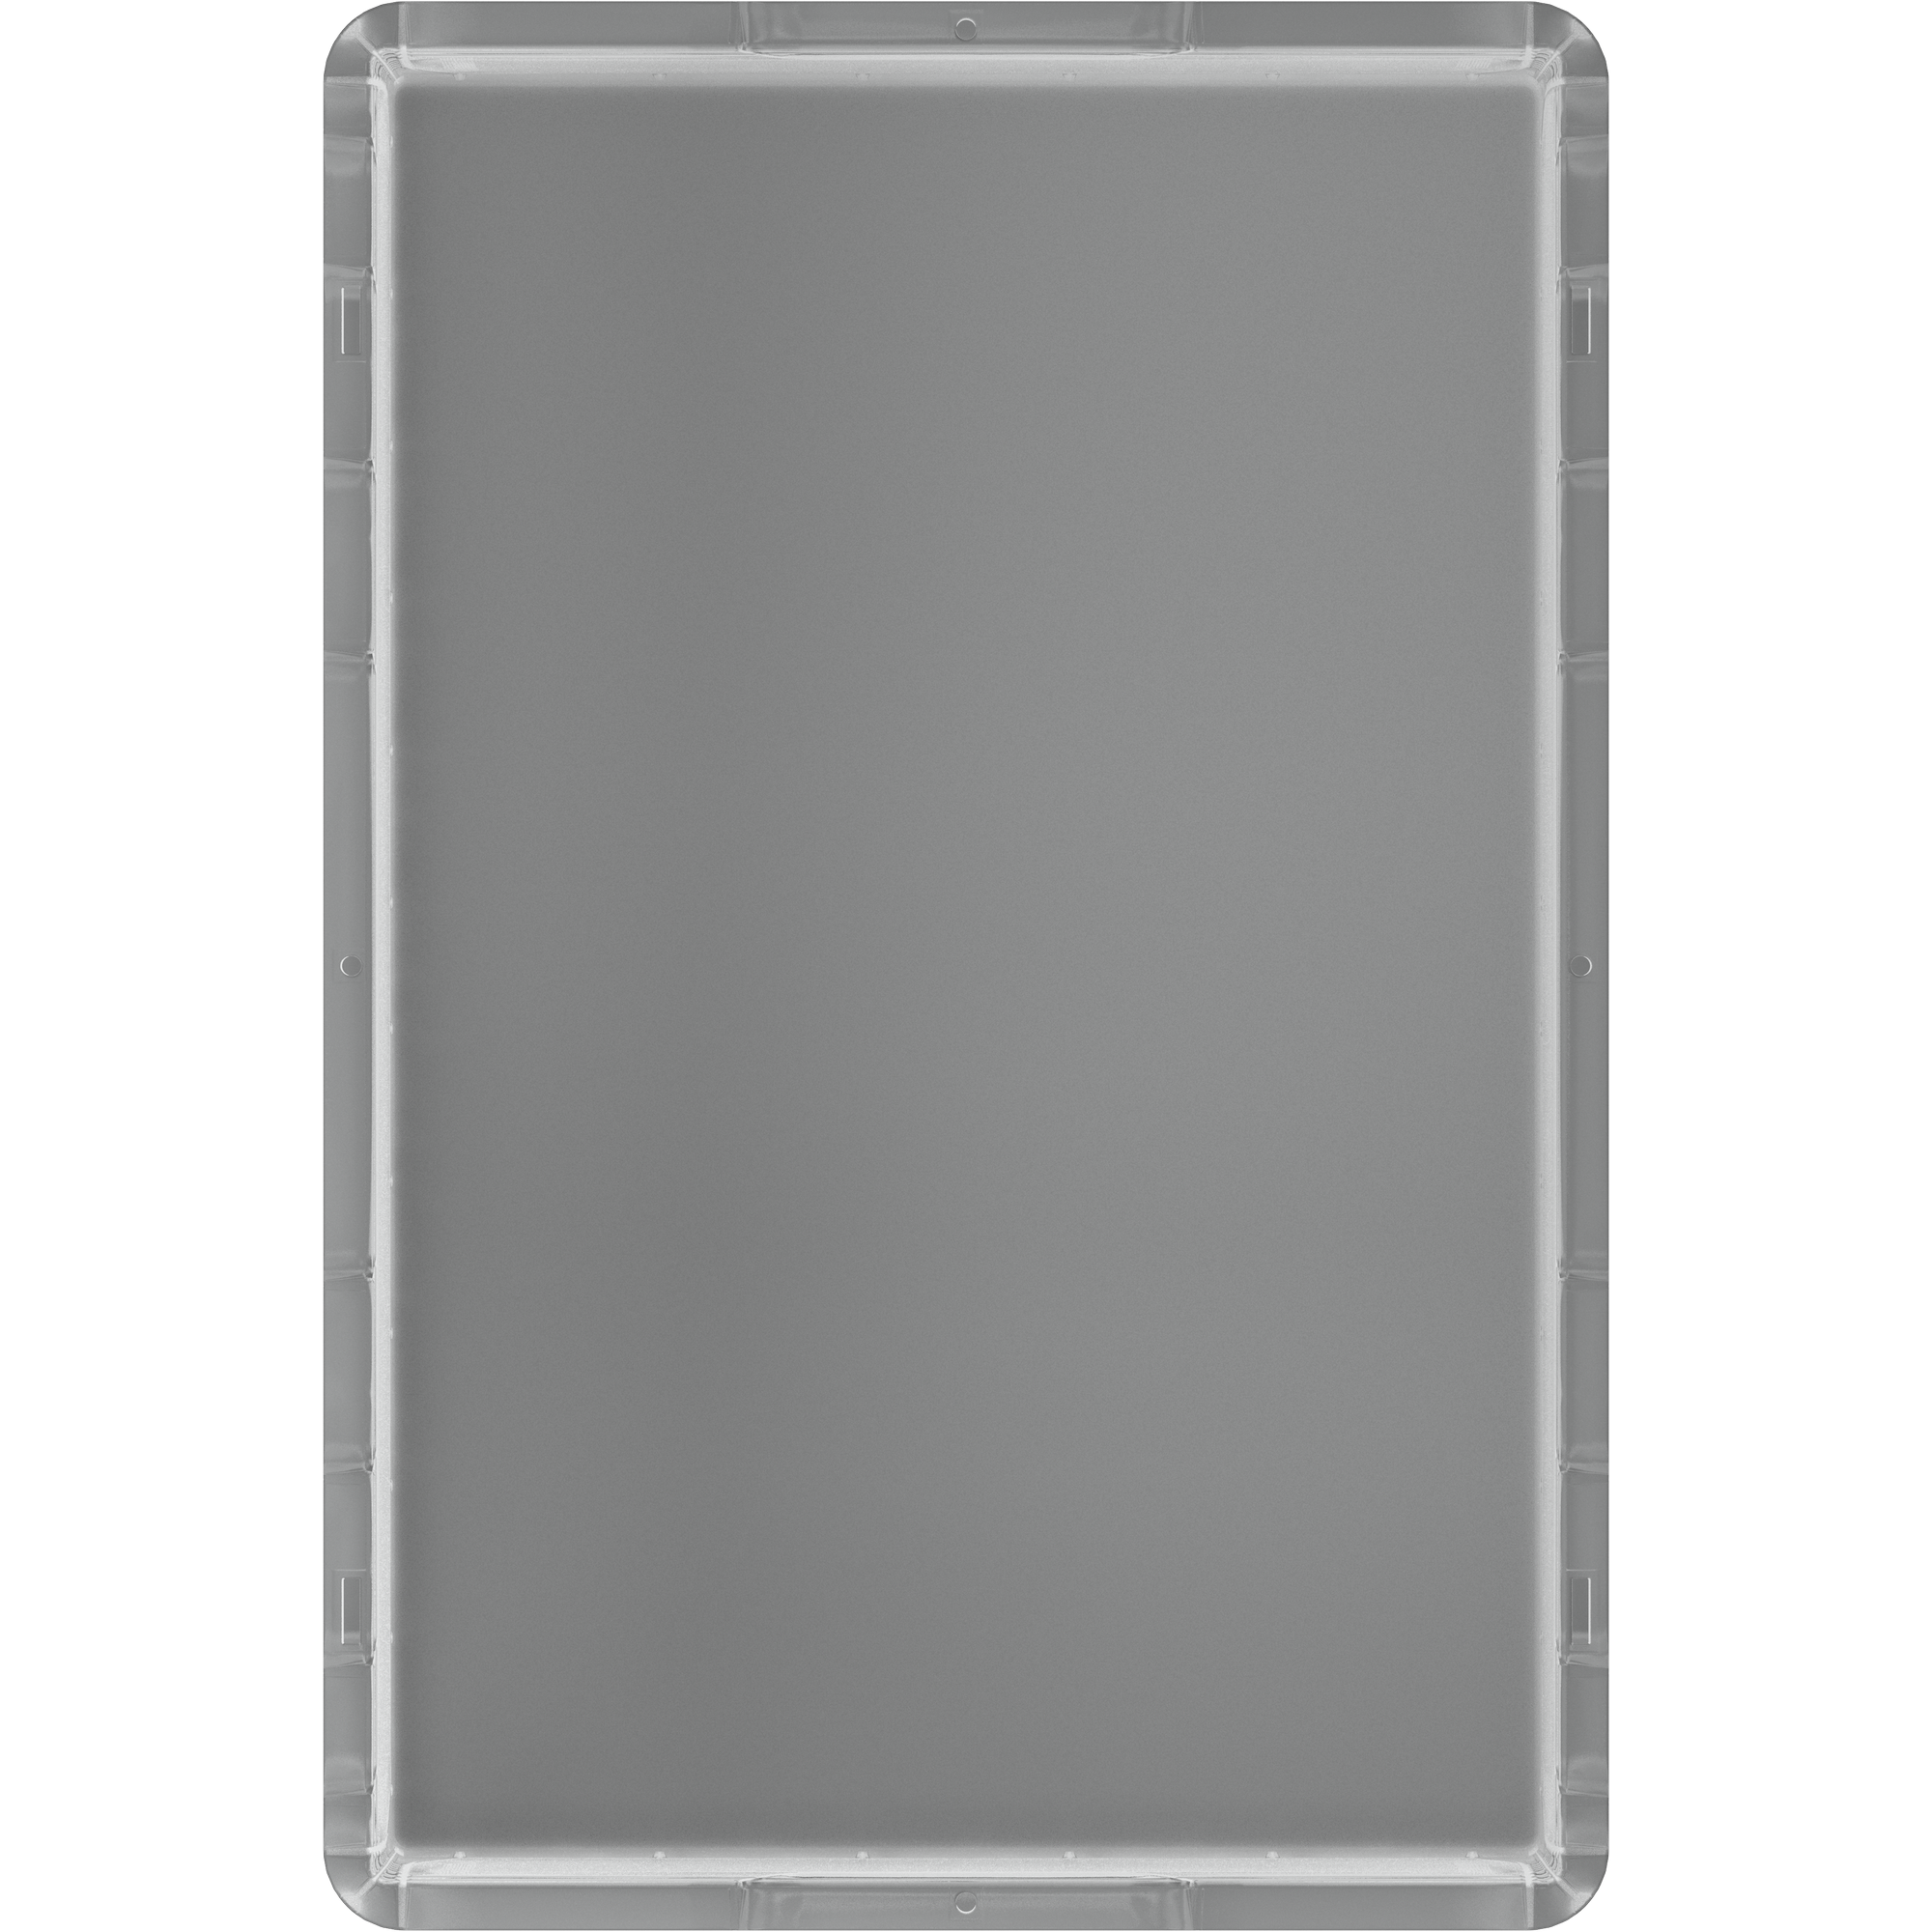 Eurobox L transparent 62l 60x40x32 cm